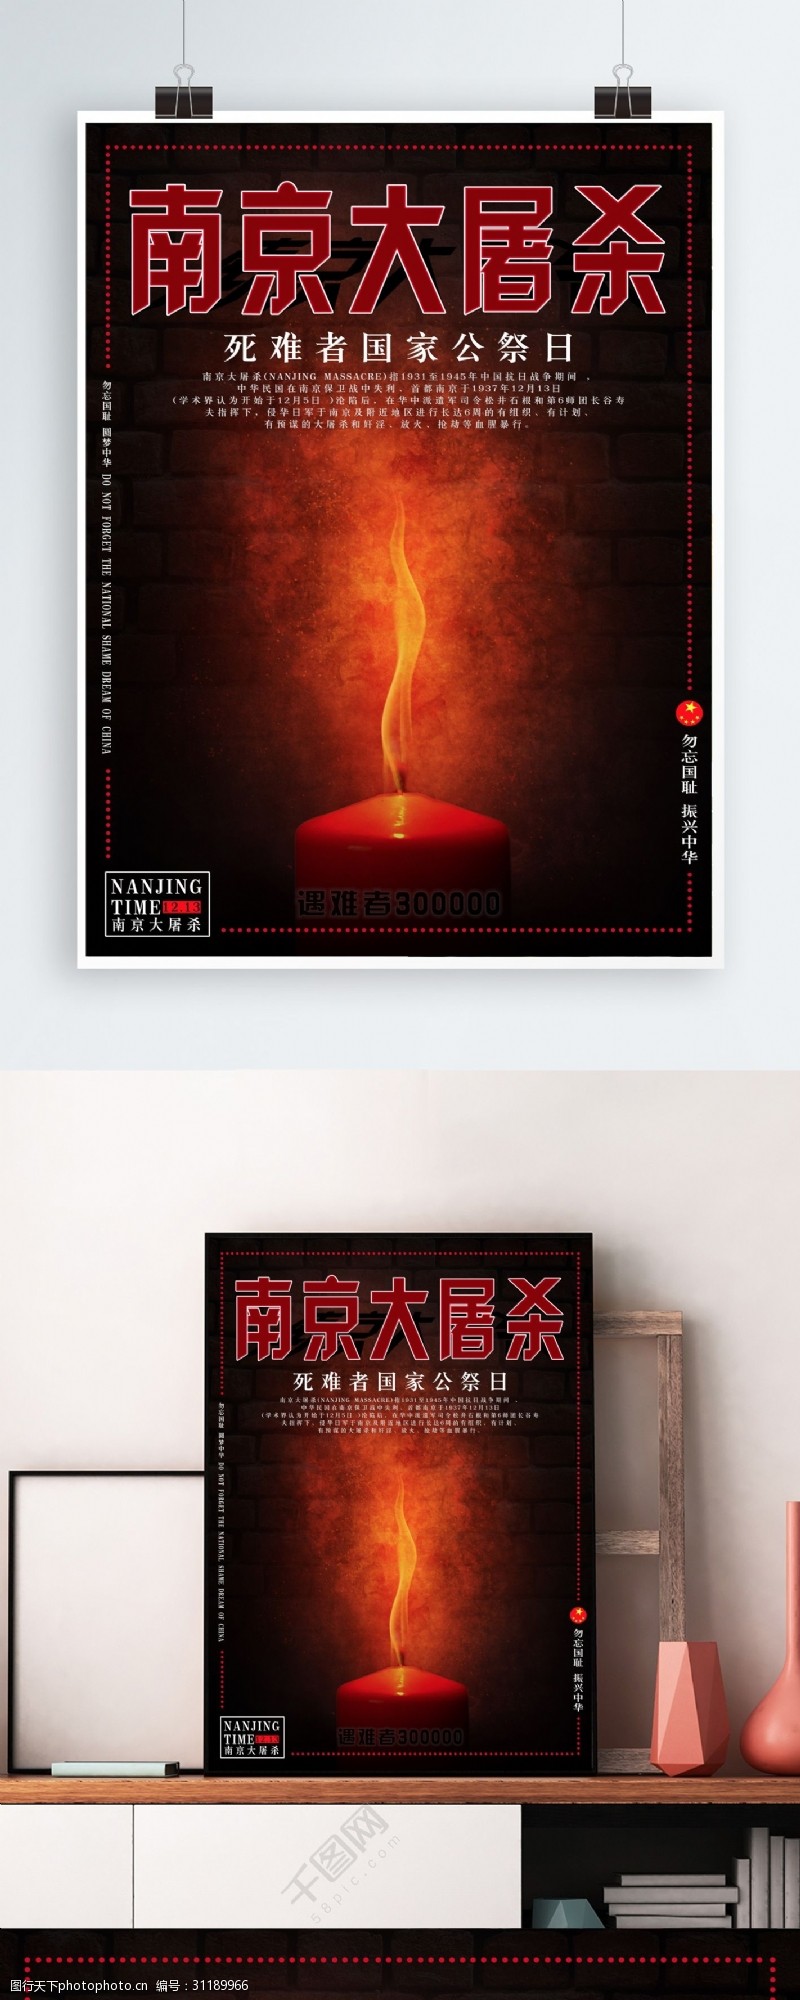 悼念国家公祭日南京大屠杀纪念日海报